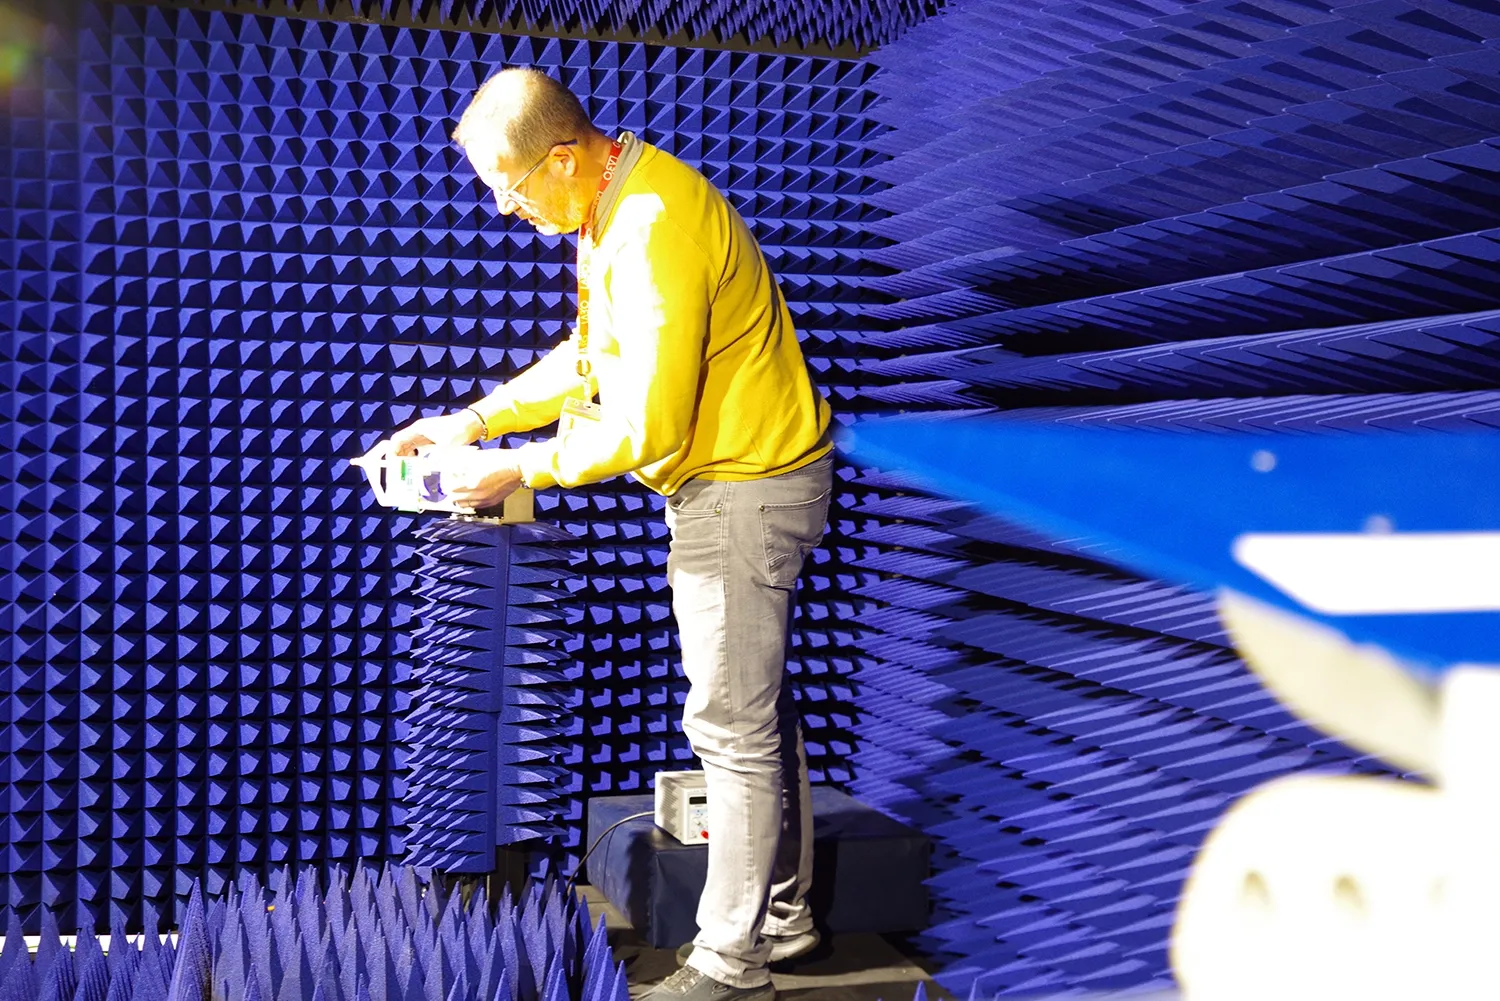 Chambre de mesures RadioFréquences de 5m de longueur avec positionneurs RF, analyseur de spectre, analyseur de réseau et générateur de fréquences